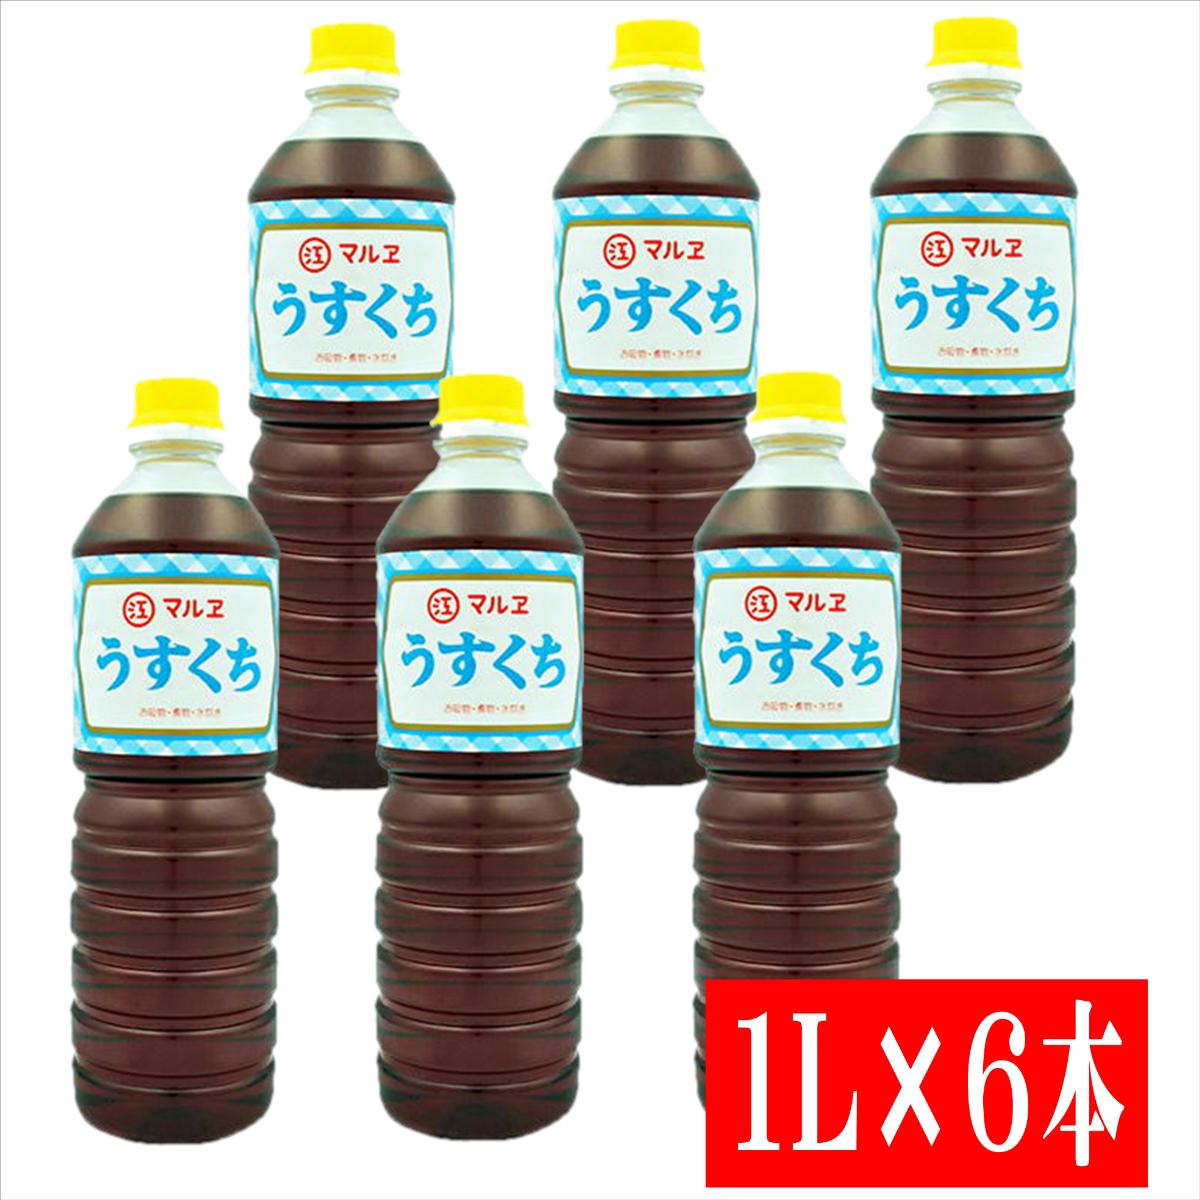 マルヱ醤油 マルヱ醤油 うすくち ペットボトル 1L×6本 淡口醤油の商品画像